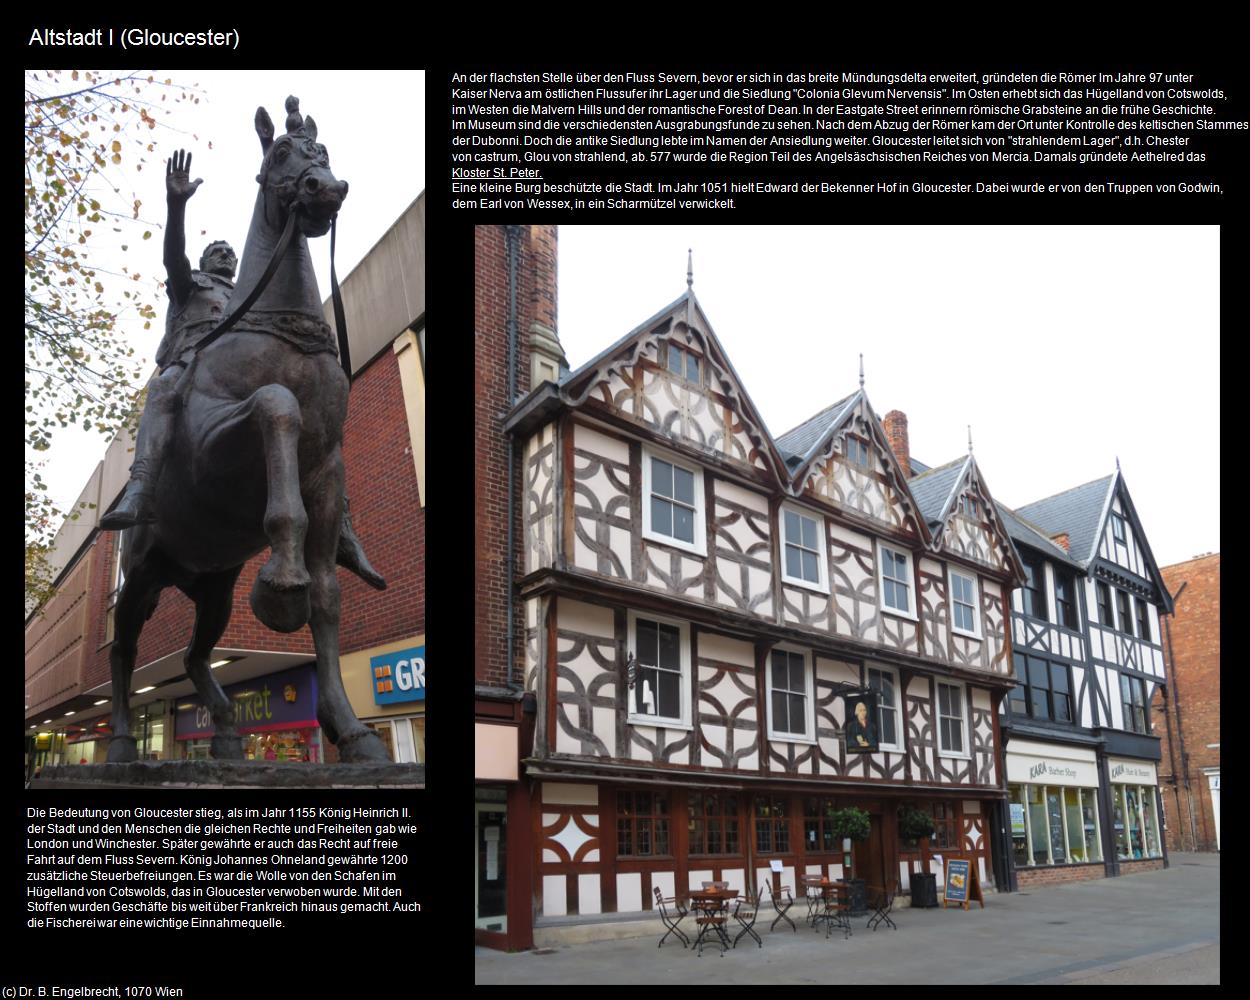 Altstadt I (Gloucester, England) in Kulturatlas-ENGLAND und WALES(c)B.Engelbrecht